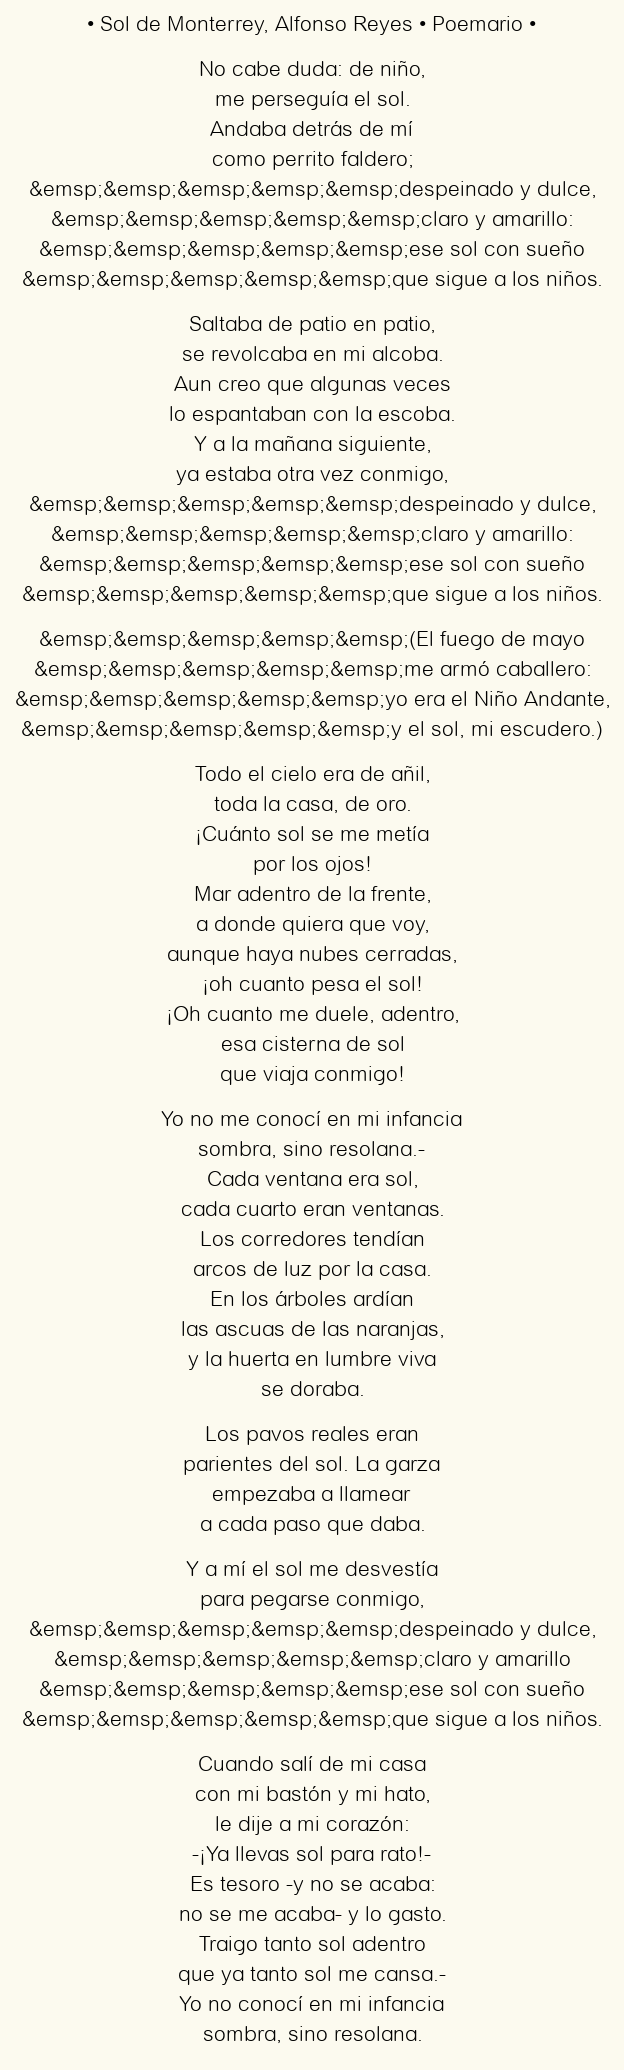 Imagen con el poema Sol de Monterrey, por Alfonso Reyes